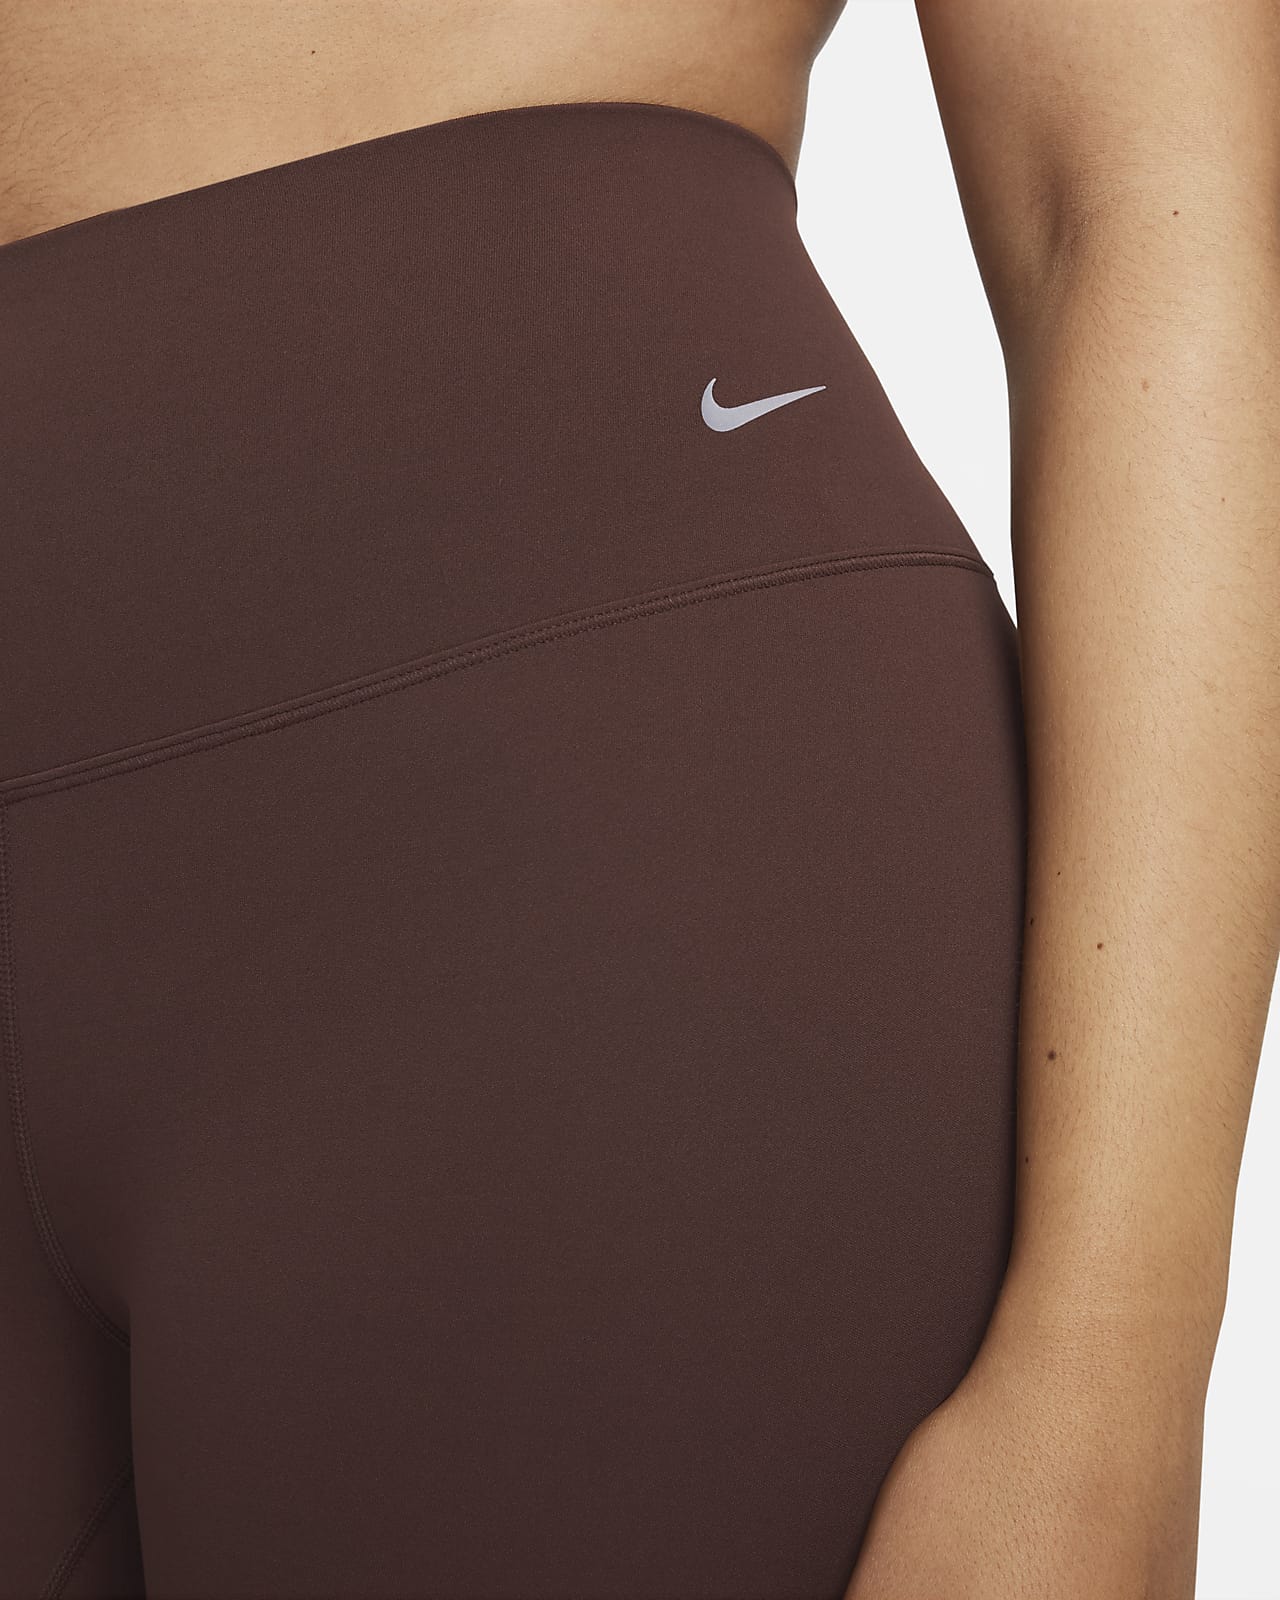 Nike Zenvy Women's Gentle-Support High-Waisted Full-Length Leggings.